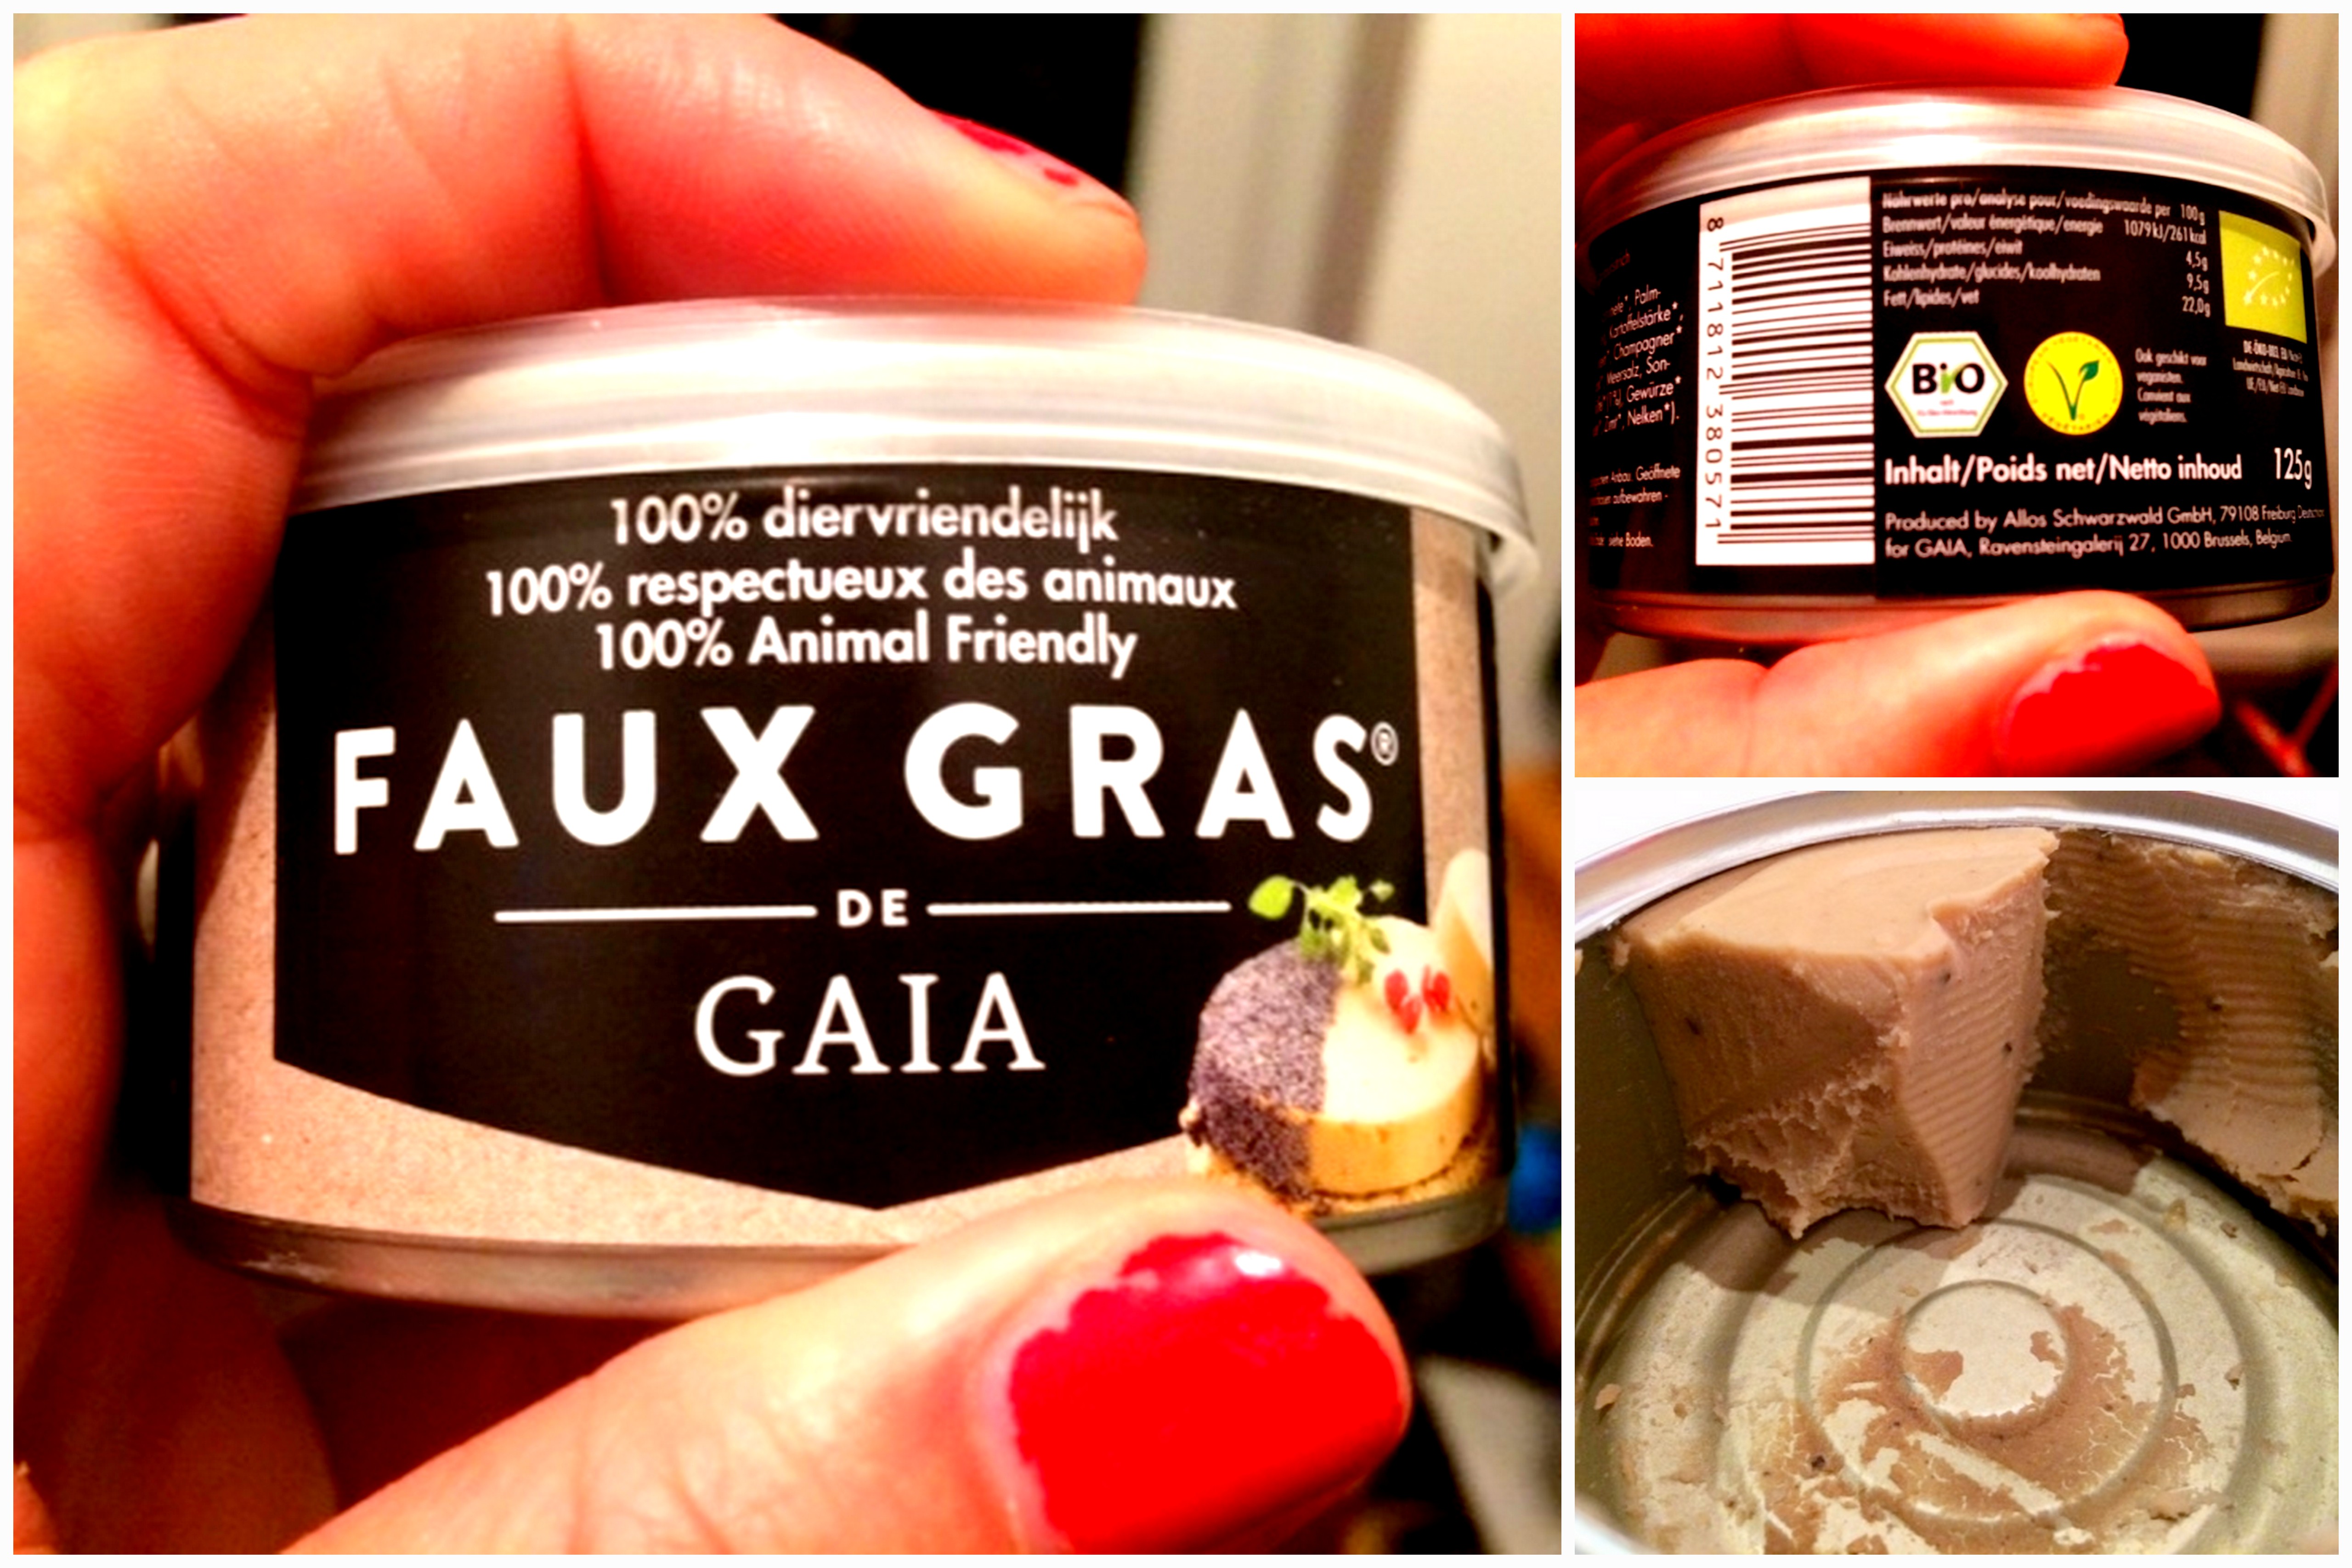 Le “Faux gras”, le foie gras vegan ! •